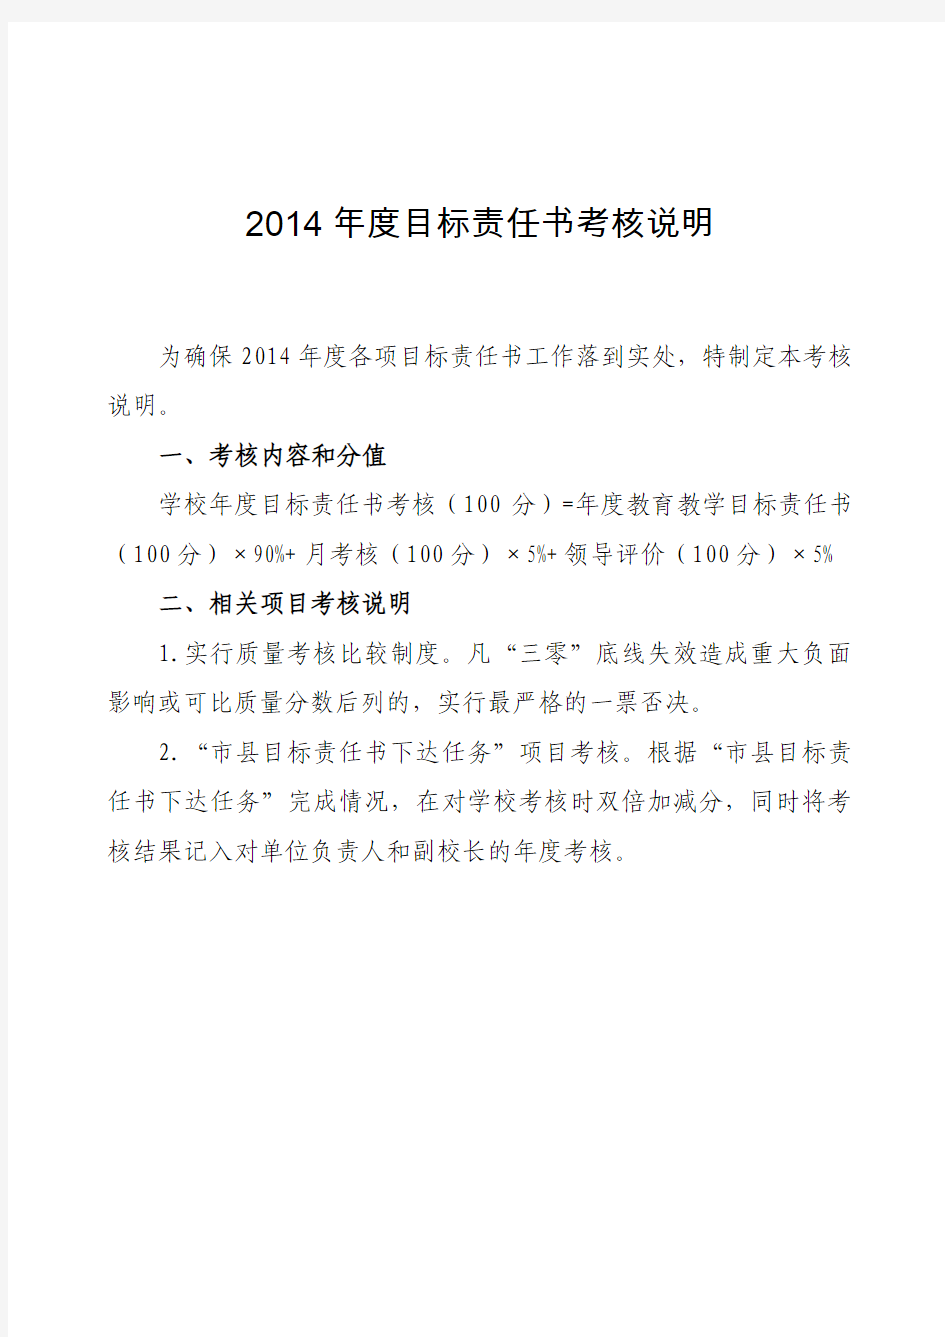 2014年度目标责任书考核说明